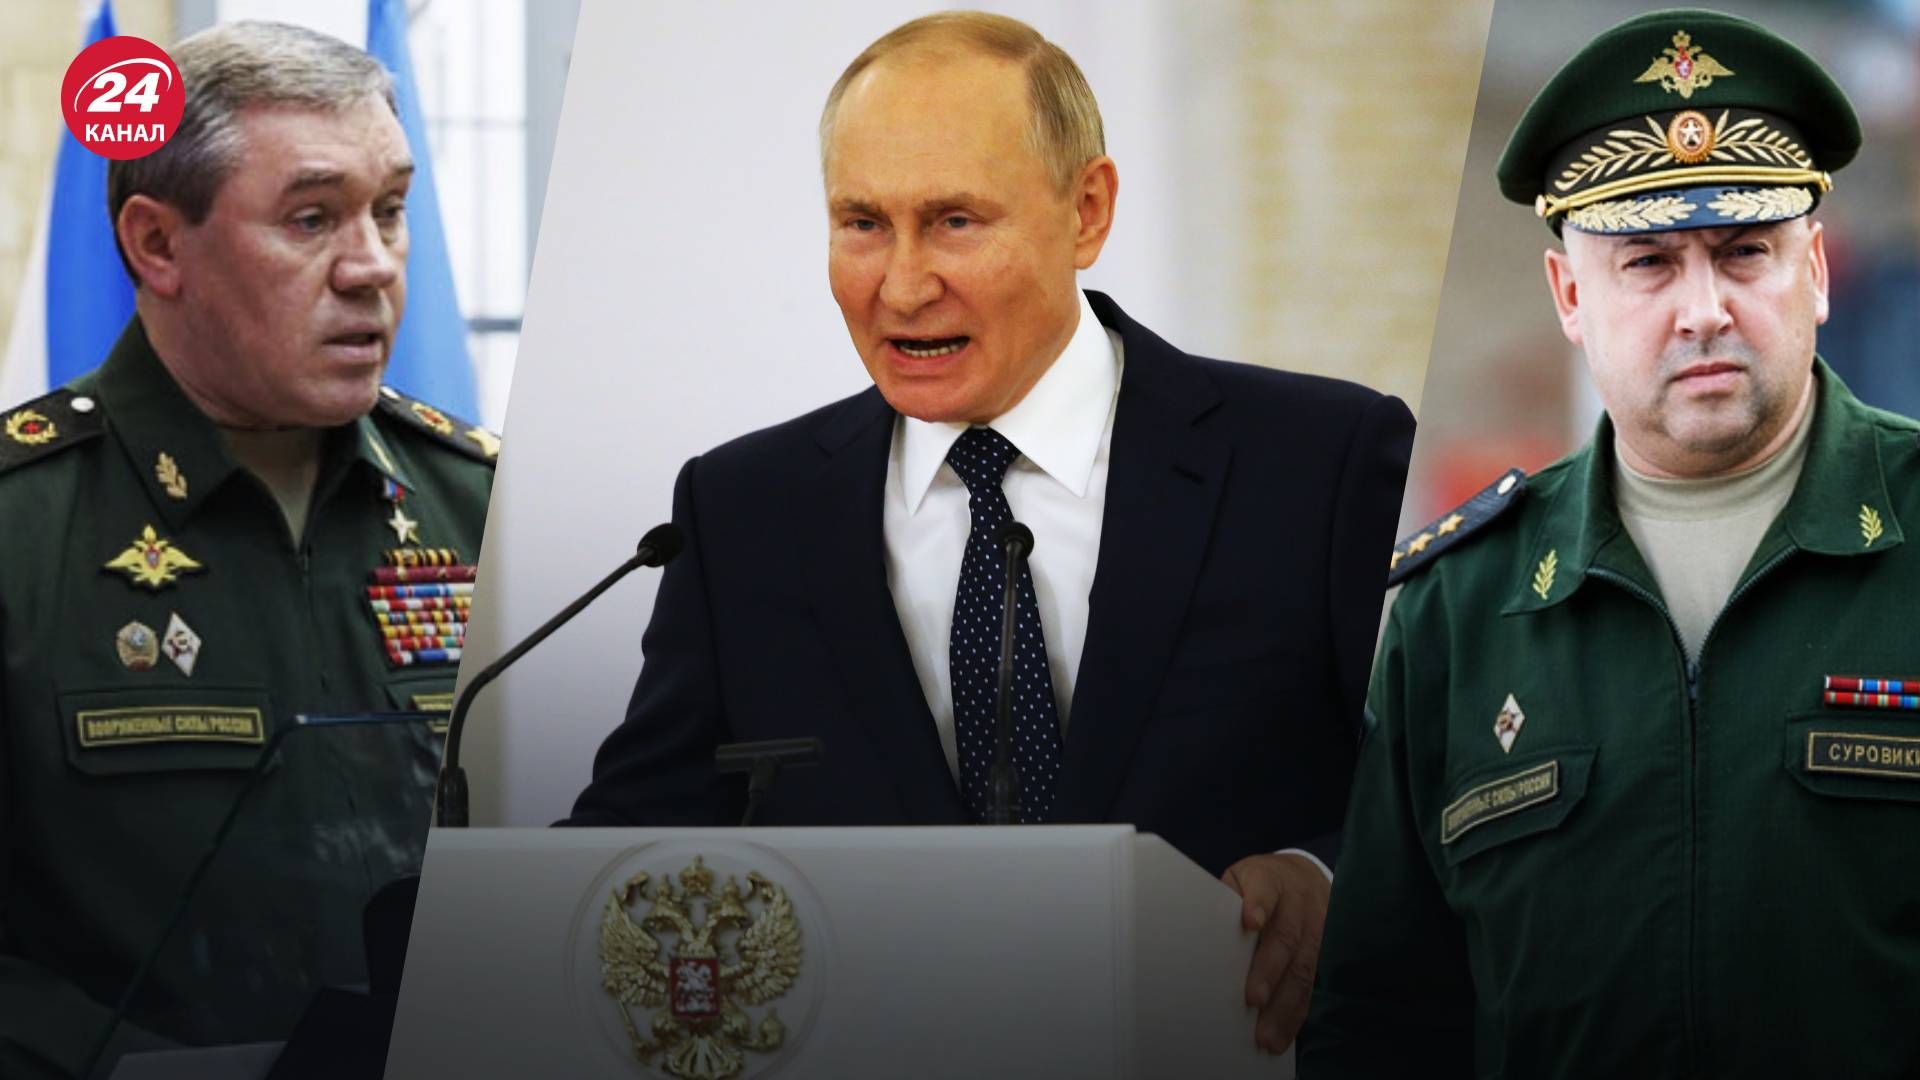 Ротация кадров в российской власти - чего ожидать от Путина годовщину вторжения